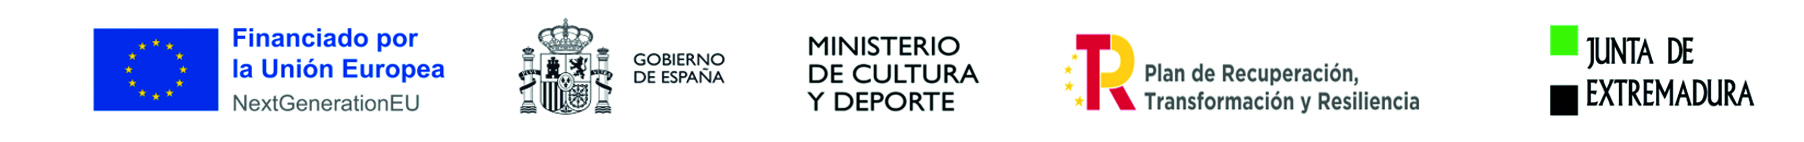 LOGO UNION EUROPEA - GOBIERNO DE ESPAÑA - MINISTERIO DE CULTURA Y DEPORTE - PLAN DE RECUPERACION, TRANSFORMACION Y RESILIENCIA - JUNTA DE EXTREMADURA